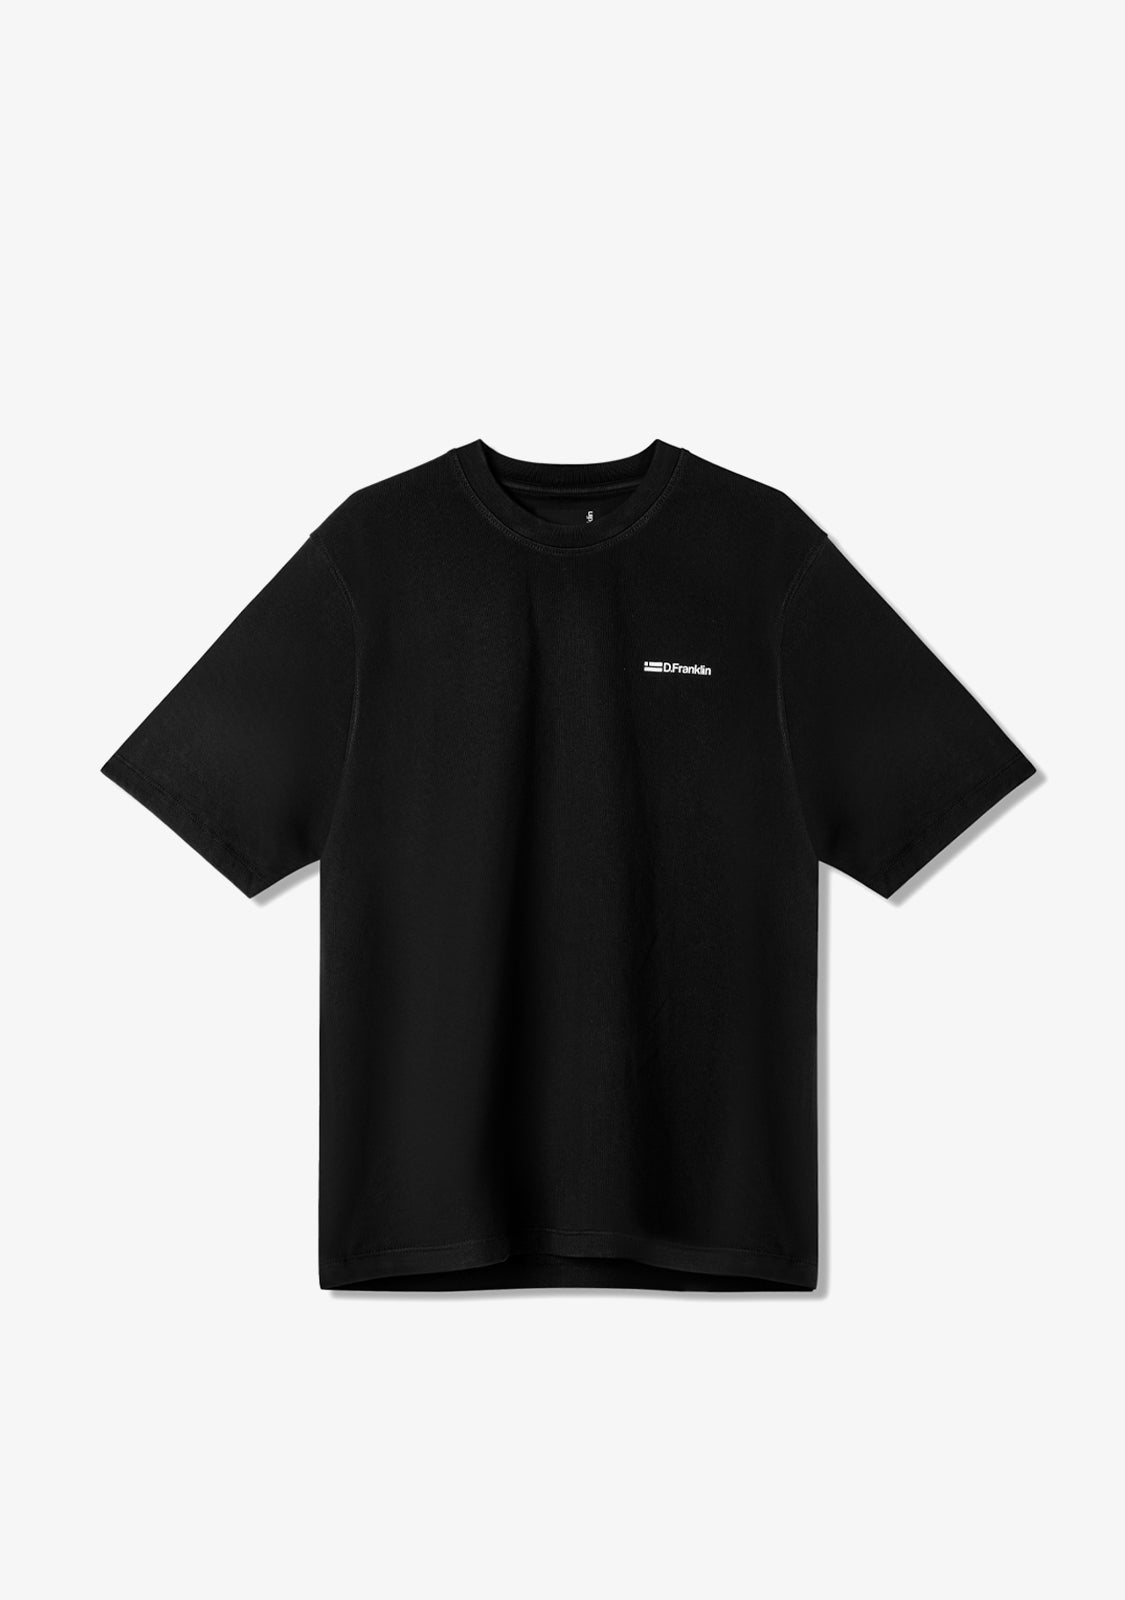 St. Denis T-Shirt Black / White